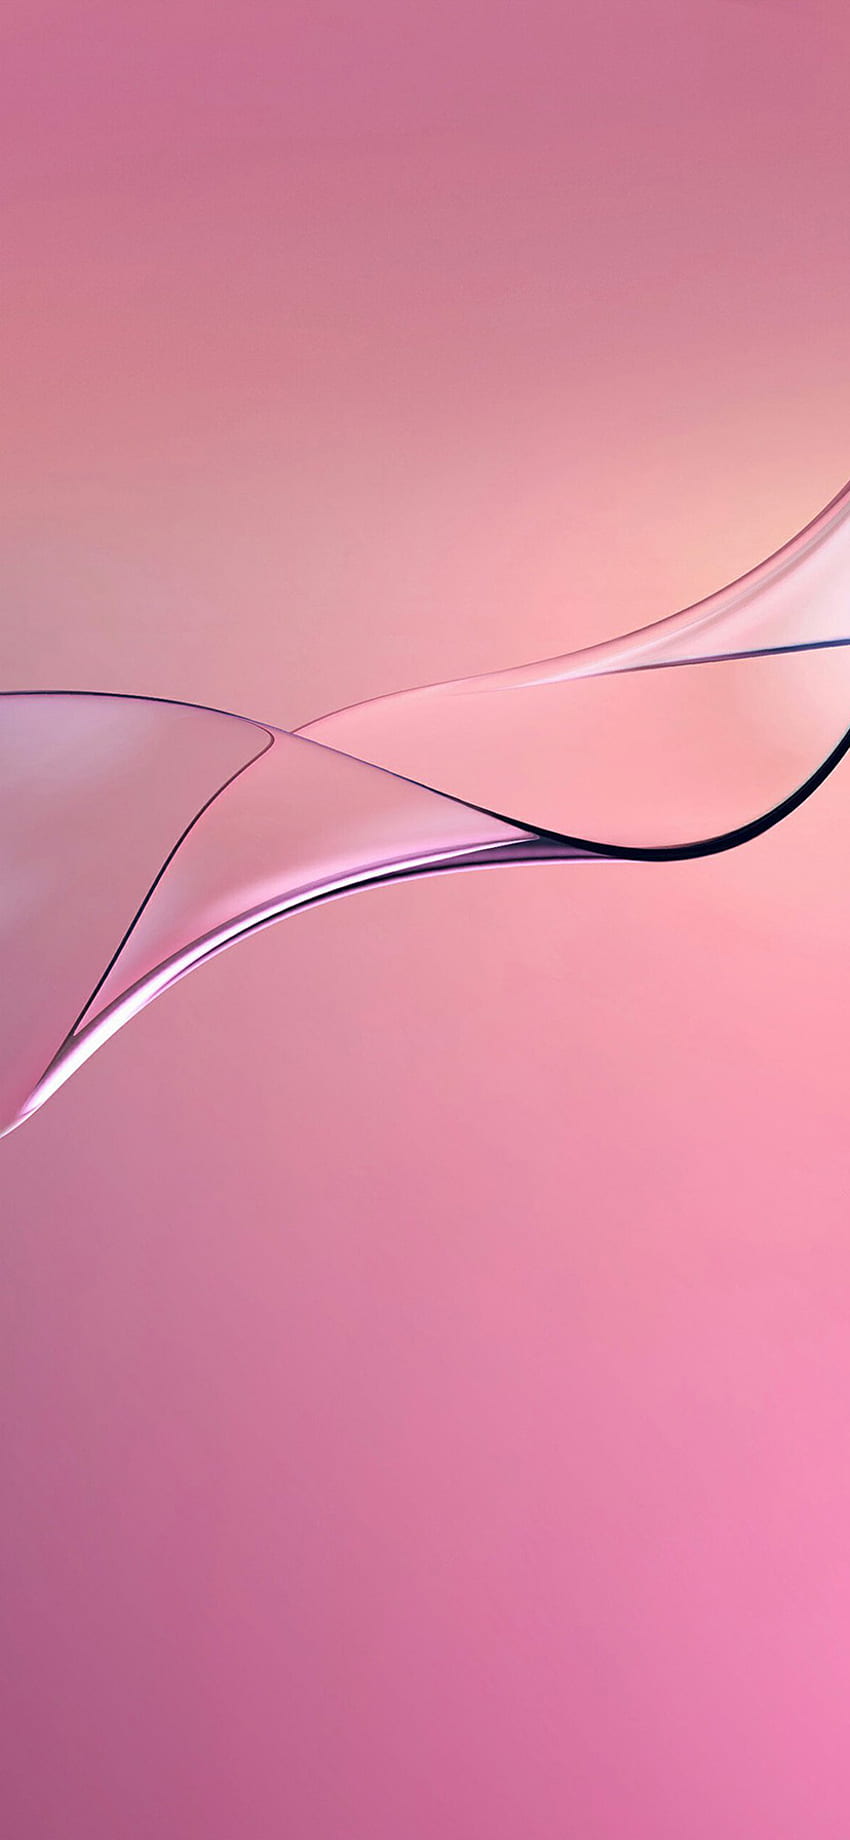 iphone xr pink wallpaper